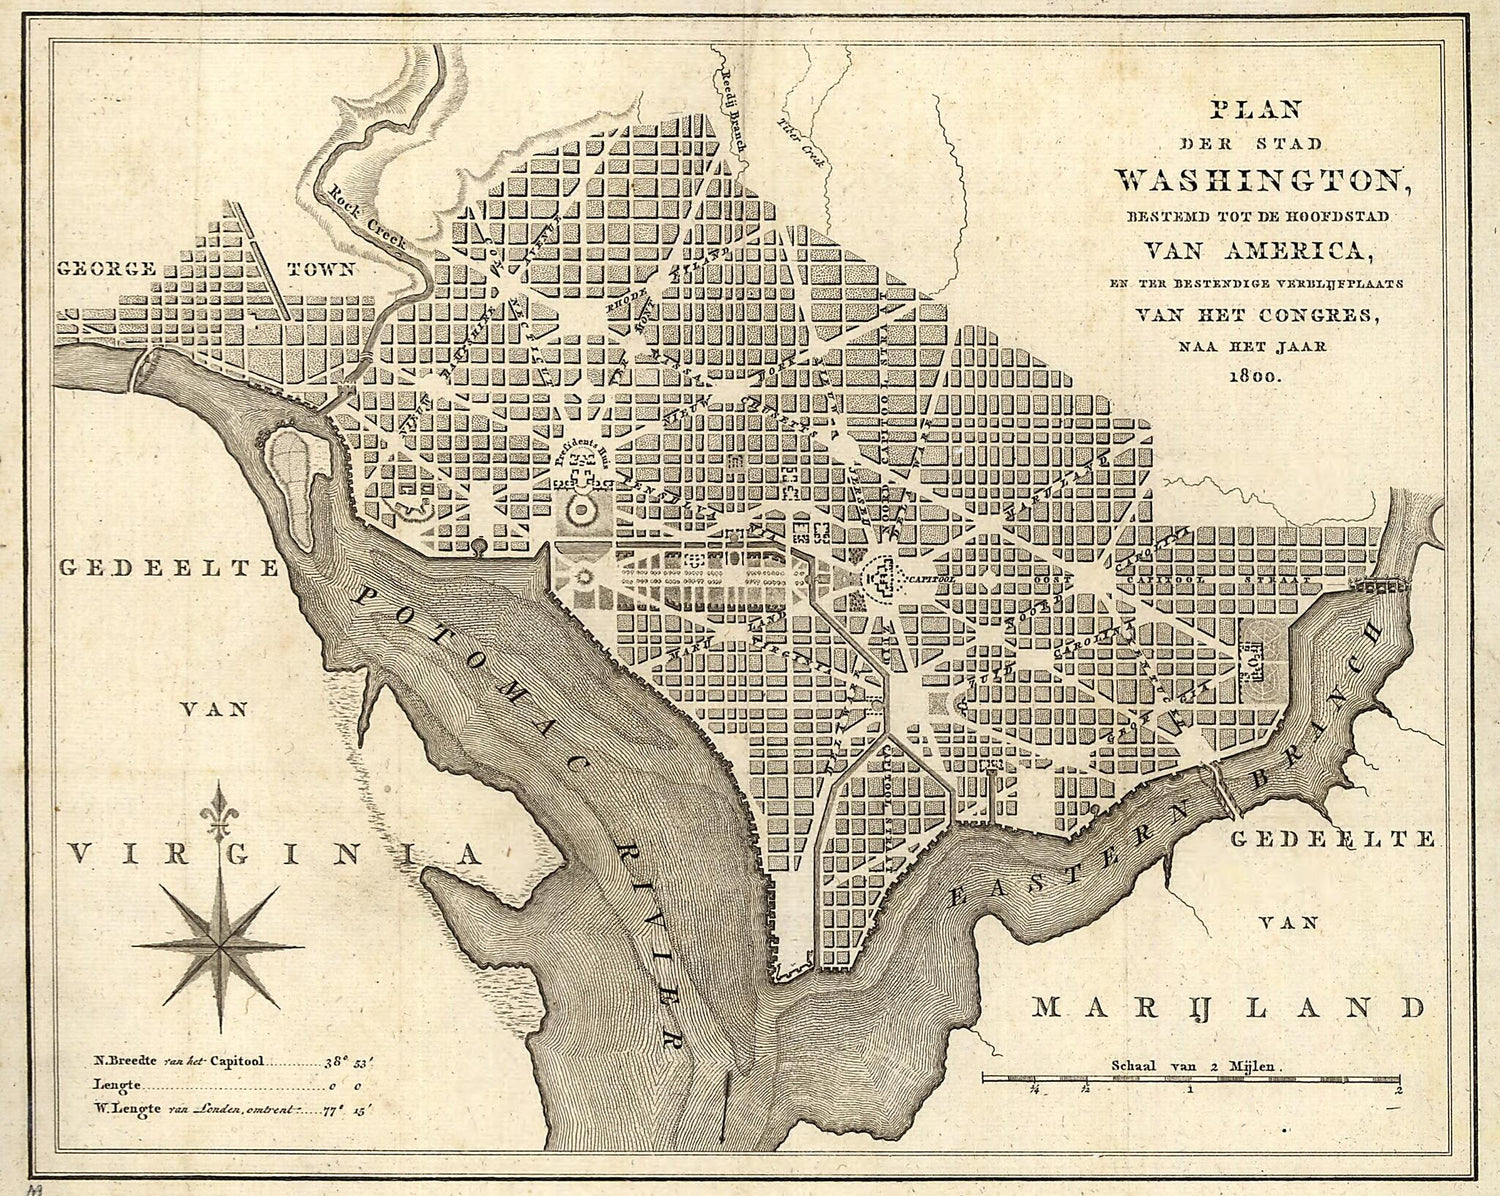 This old map of Plan Der Stad Washington : Bestemd Tot De Hoofdstad Van America, En Ter Bestendige Verblijfplaats Van Het Congres, Naa Het Jaar 1800 from 1793 was created by A. Van Der Kroe in 1793